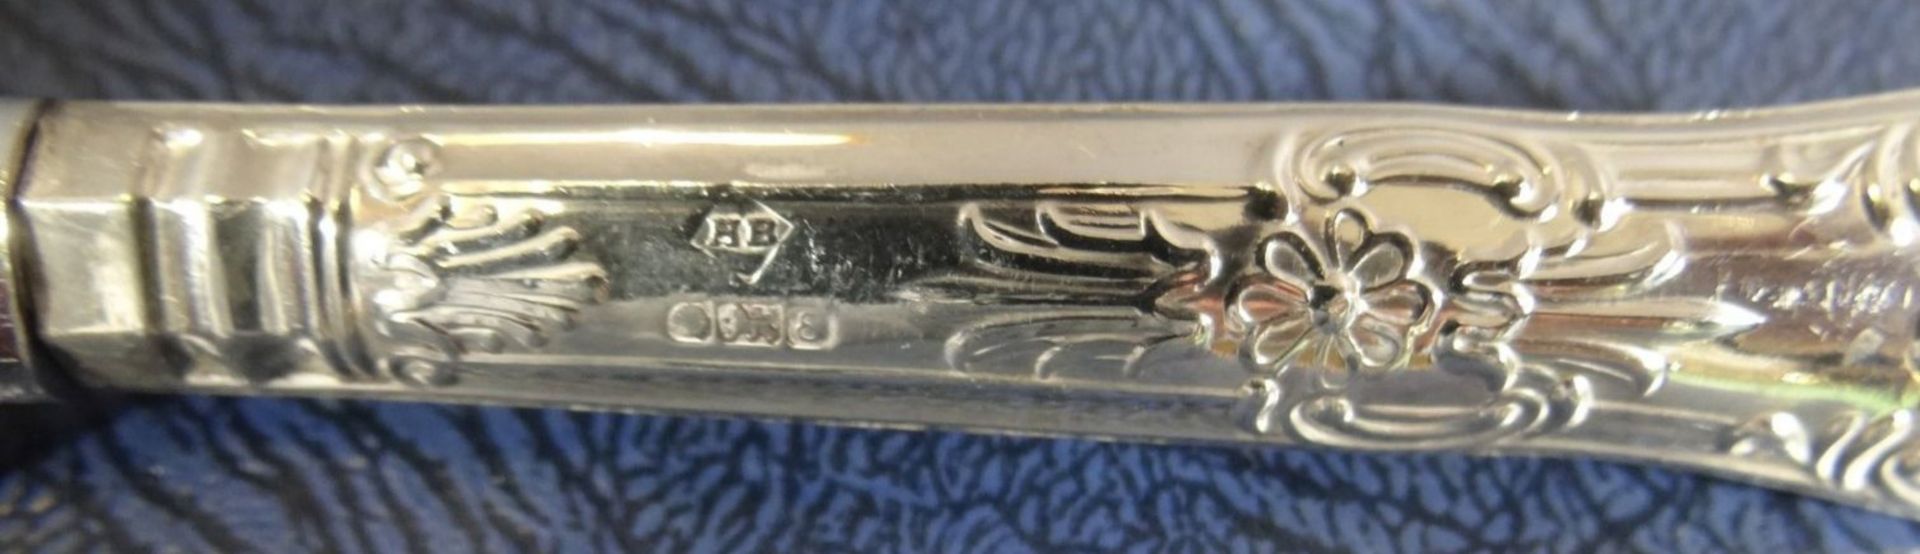 6x Obstbesteck, Sheffield, Silbergriffe-925-, gut erhalten, in Kasten, L-Messer 16,5 cm, zus. 280 - Bild 5 aus 6